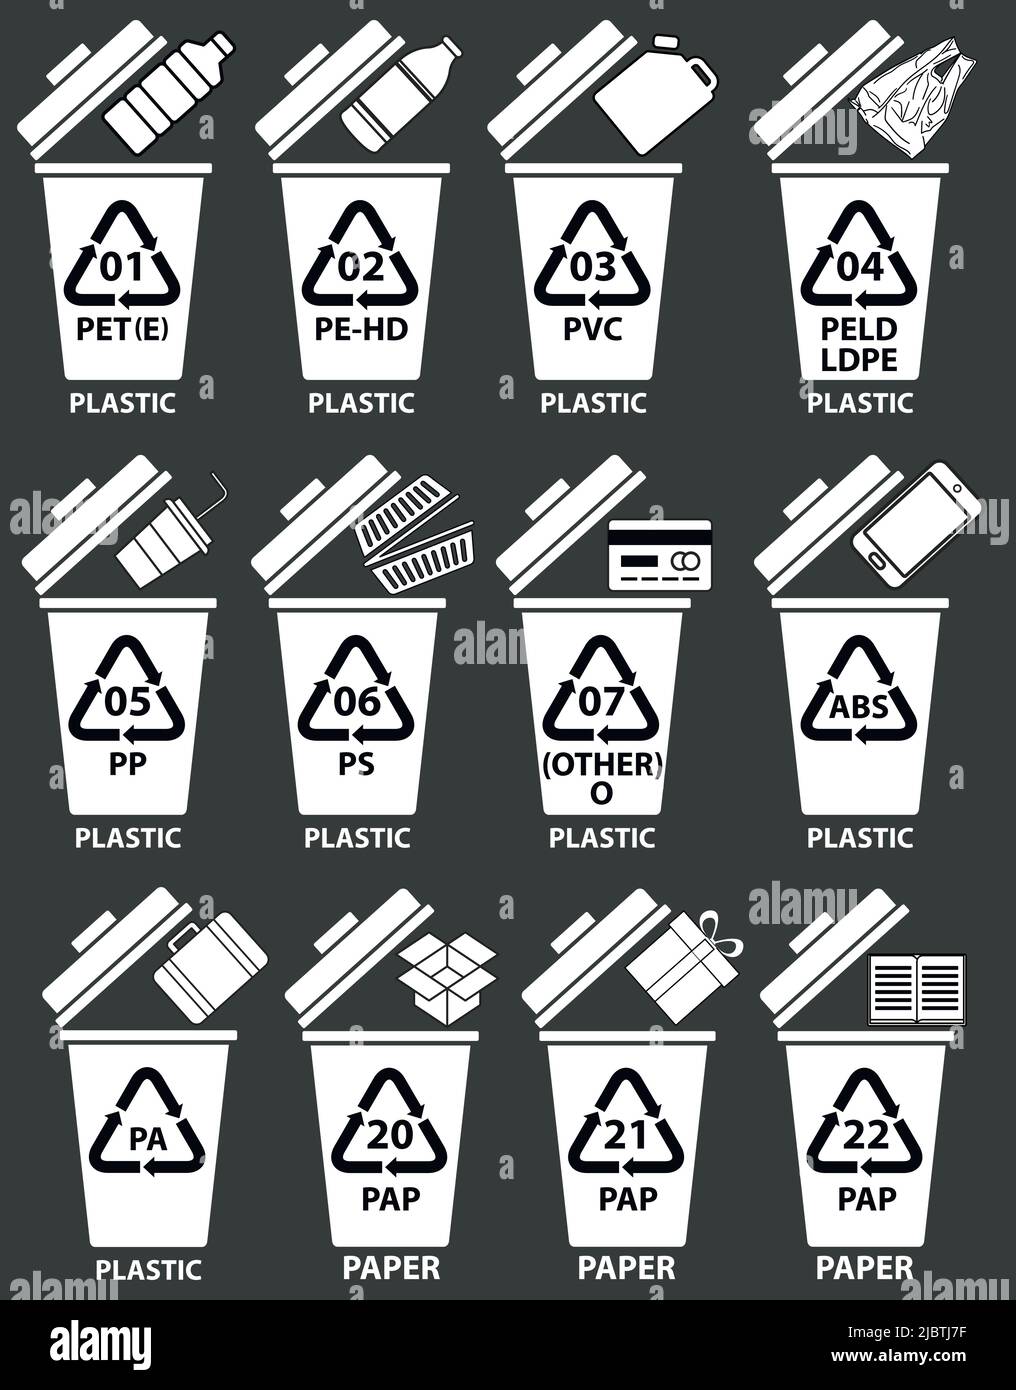 Recycling-Codes für Kunststoff und Papier. Recycling-Behälter Abbildung mit Flaschen, Kanister, Plastikbeutel. Recycelte Abfallbehälter mit Beispielen und Zahlen. Stock Vektor